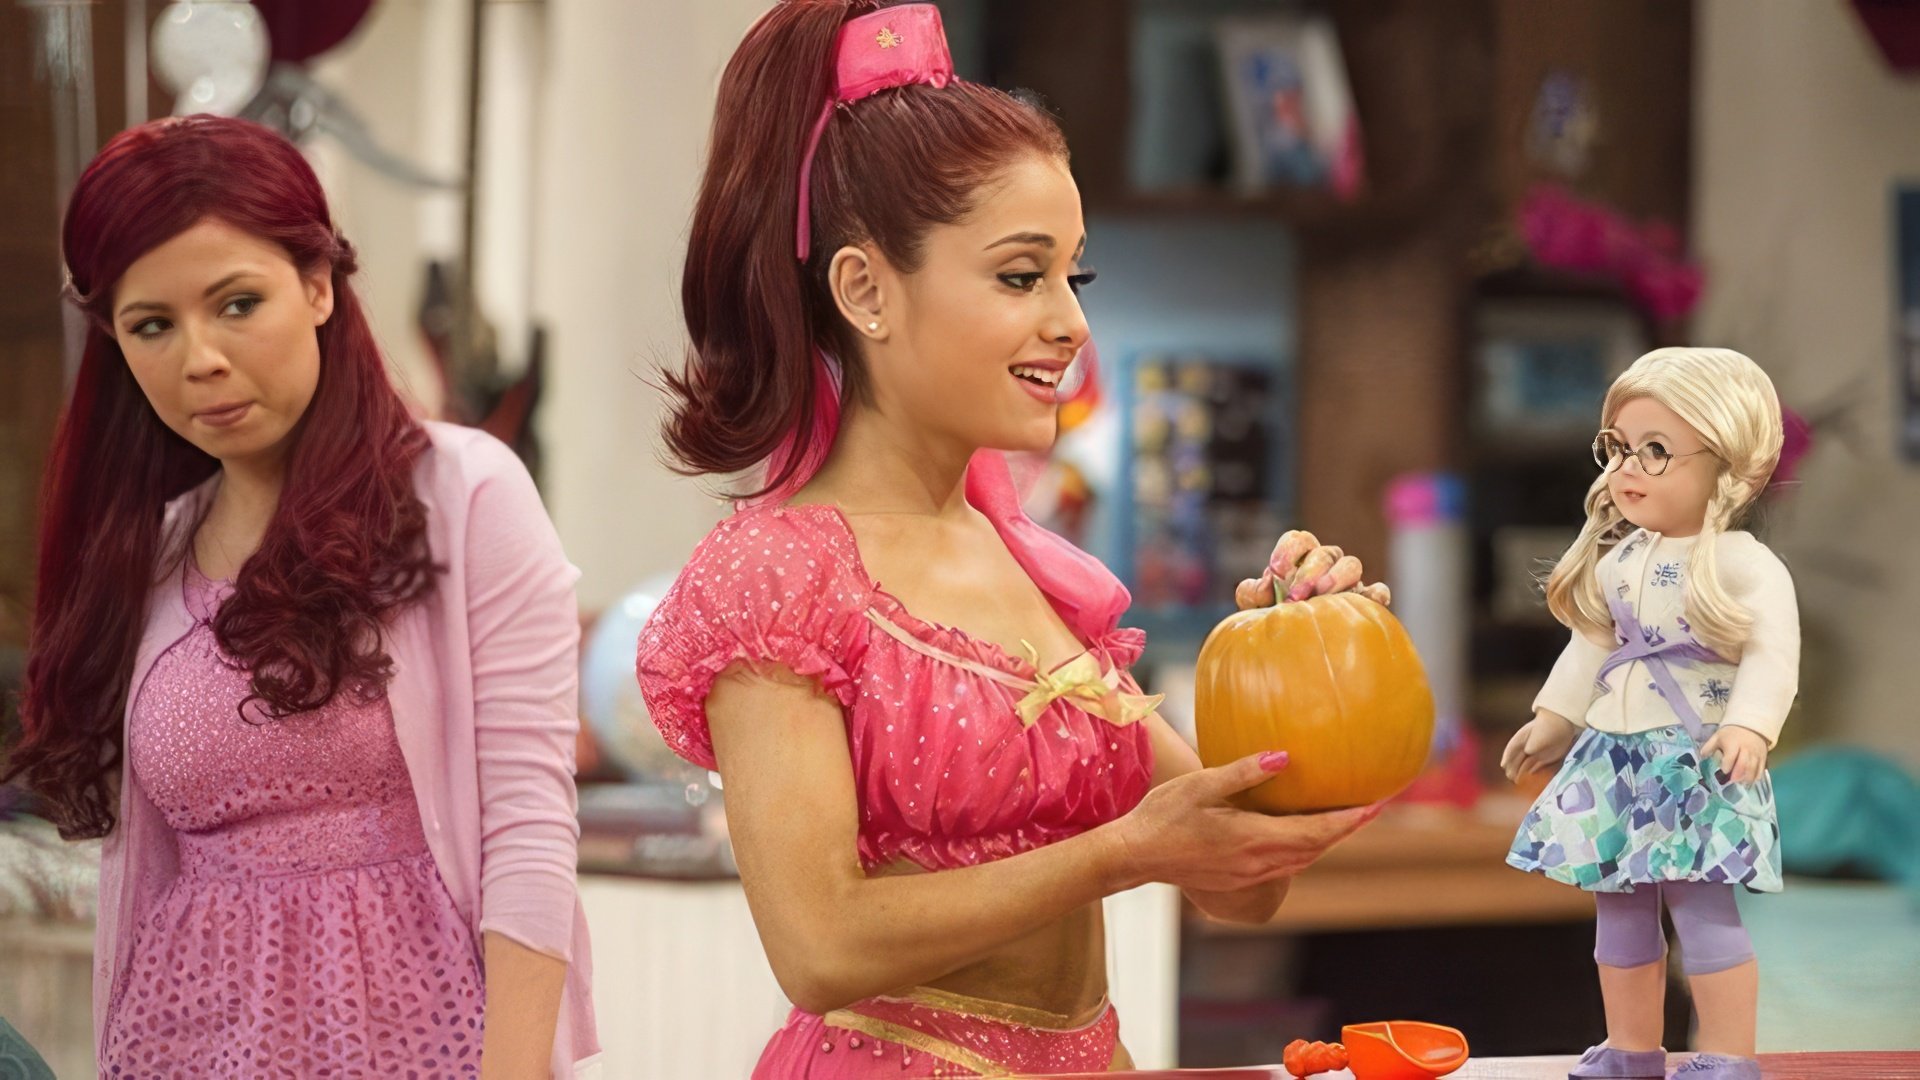 Ariana Grande in the sitcom 'Sam & Cat'